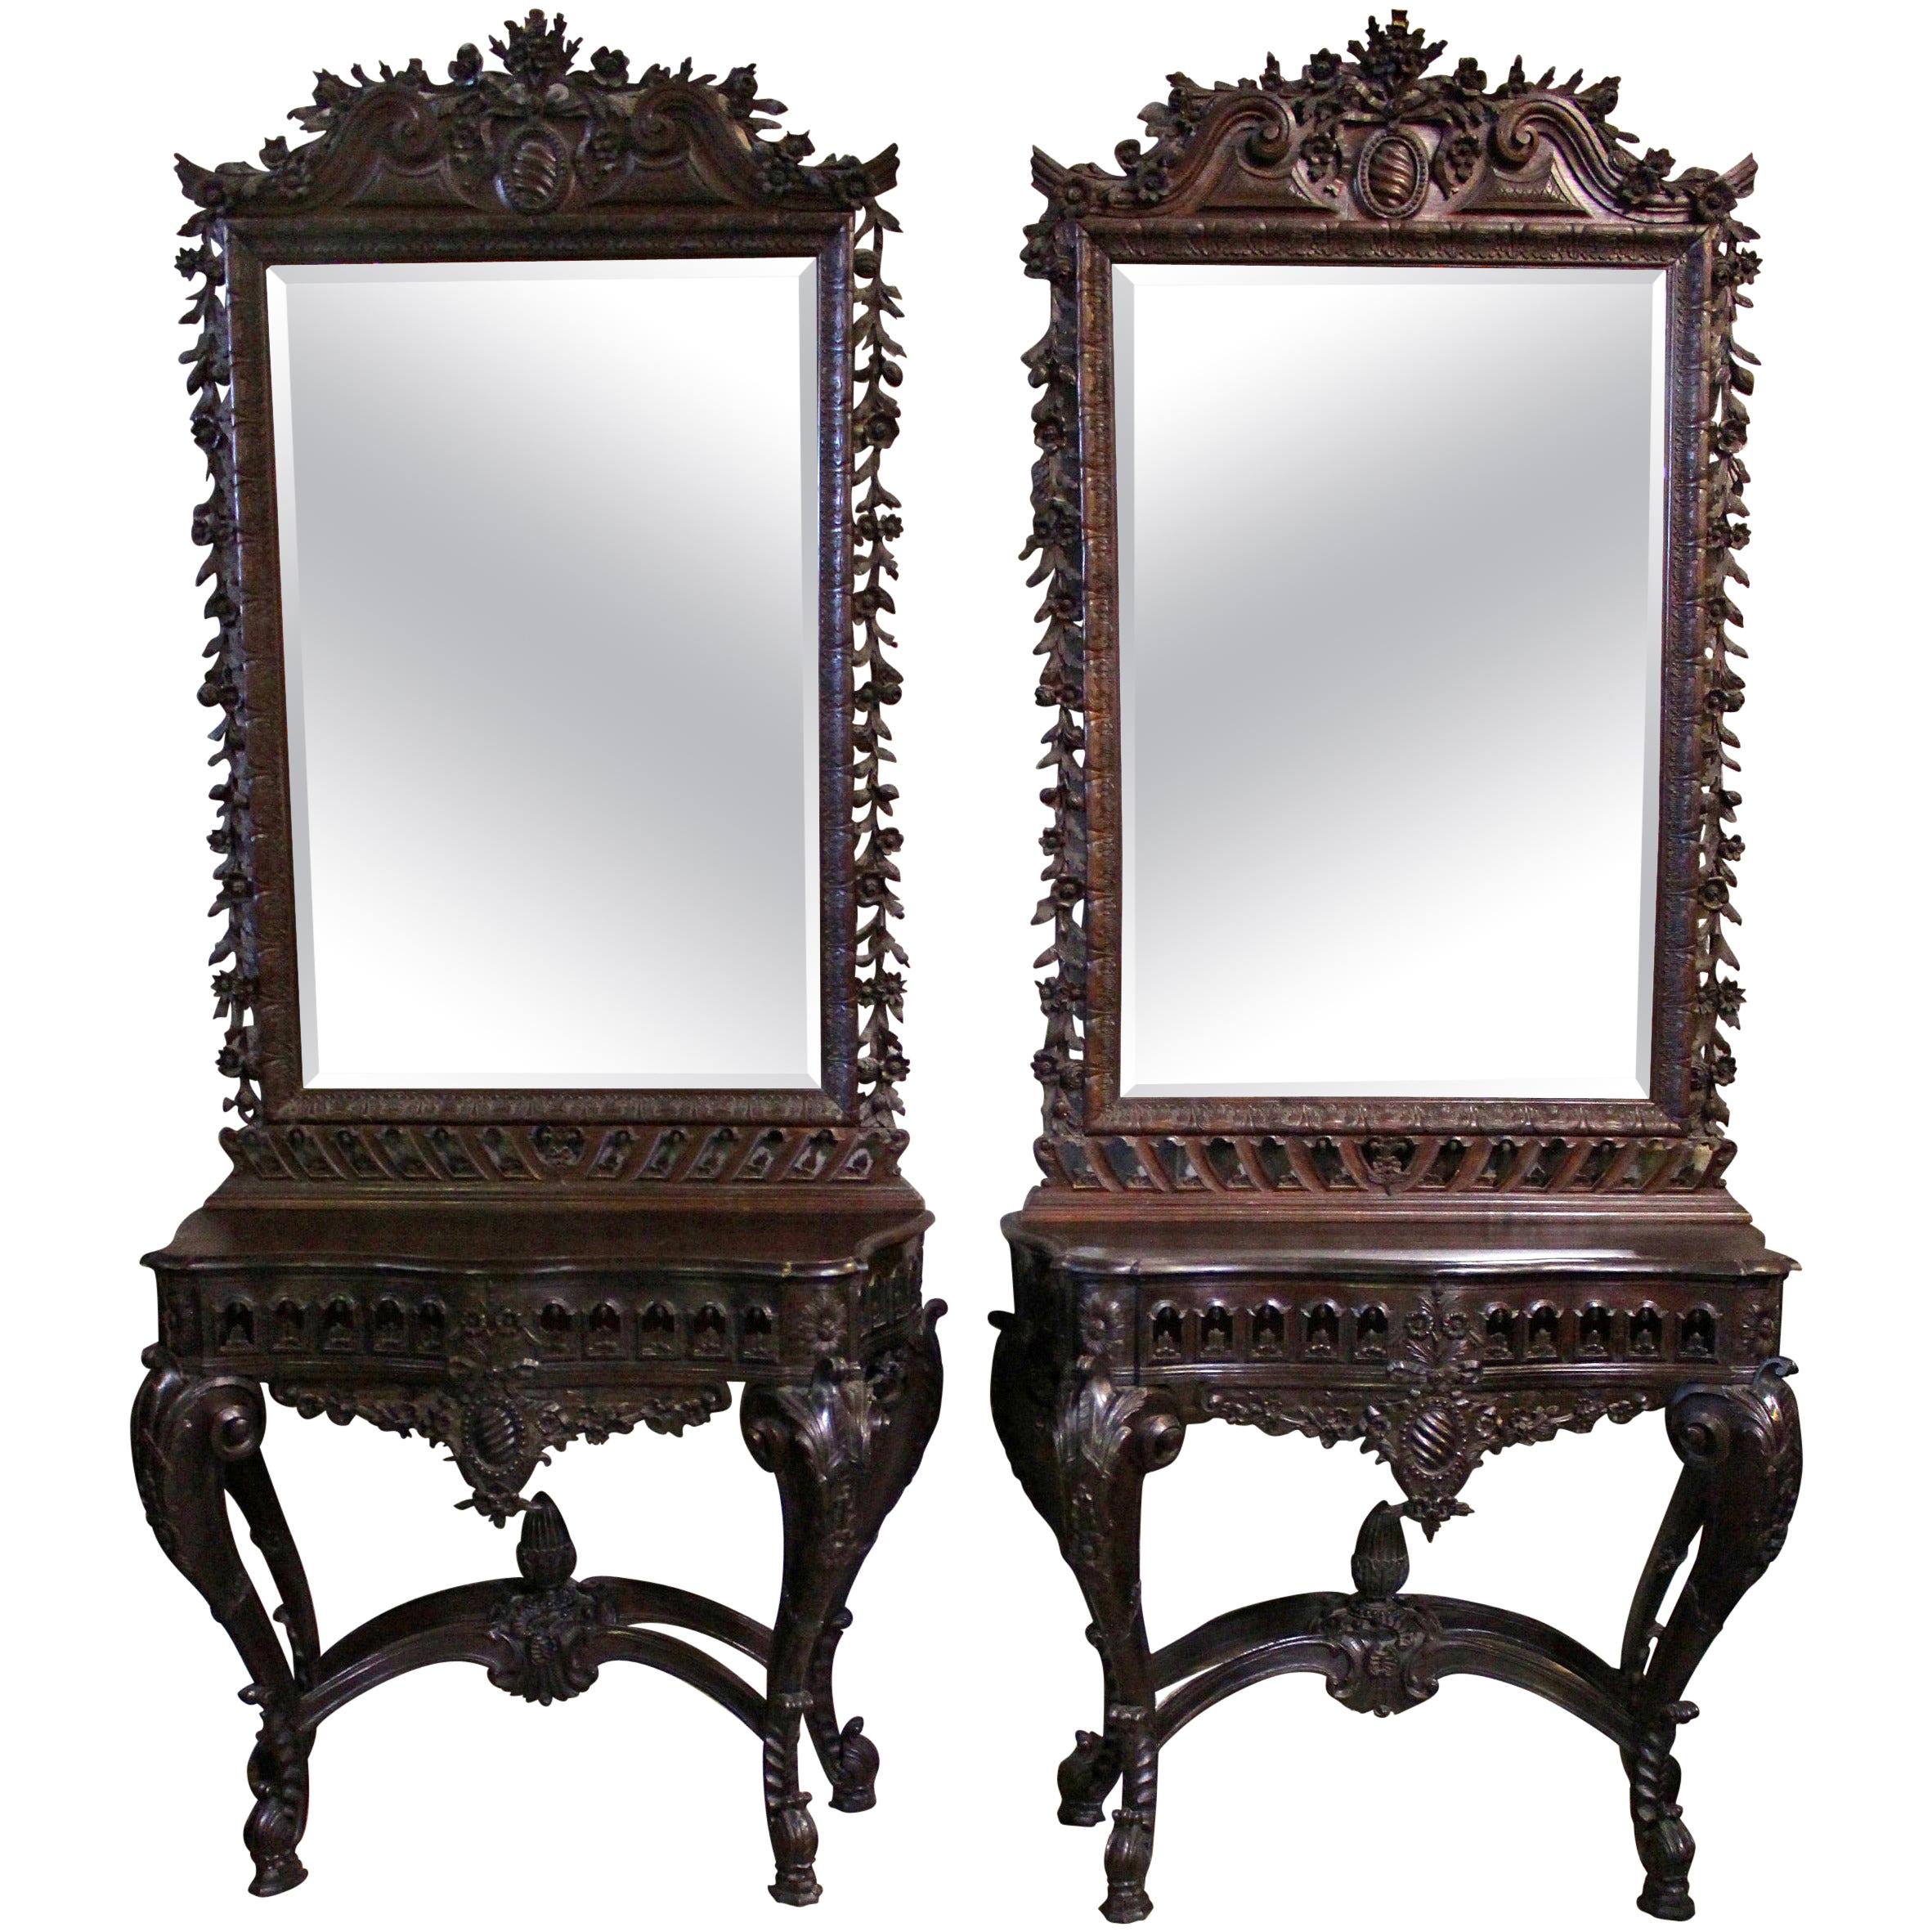 Paire de consoles et miroirs de style rococo portugais du XIXe siècle